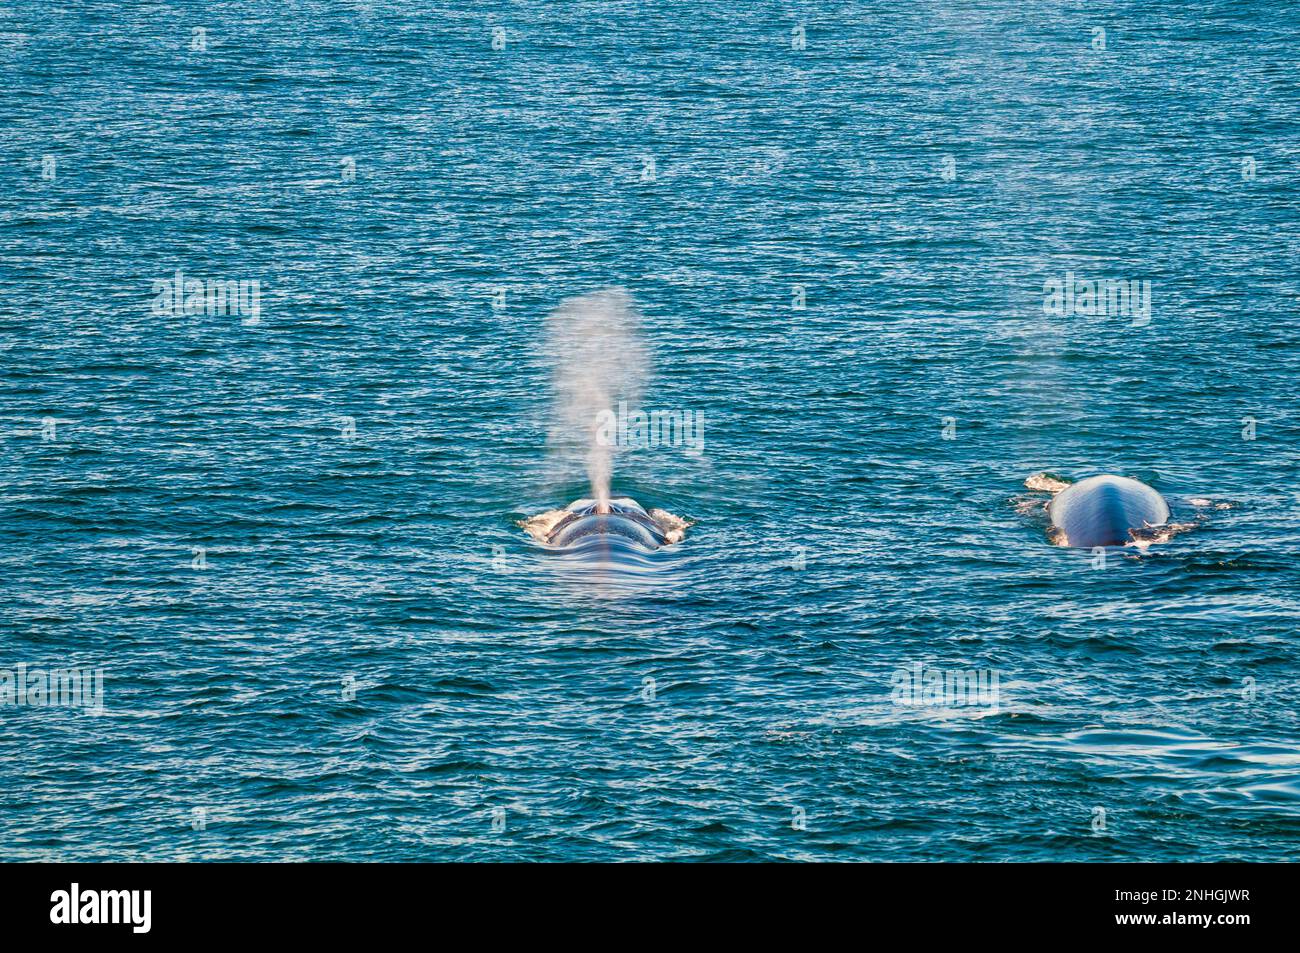 Wale spucken, bevor sie vor den Svalbard-Inseln Norwegens eintauchen Stockfoto